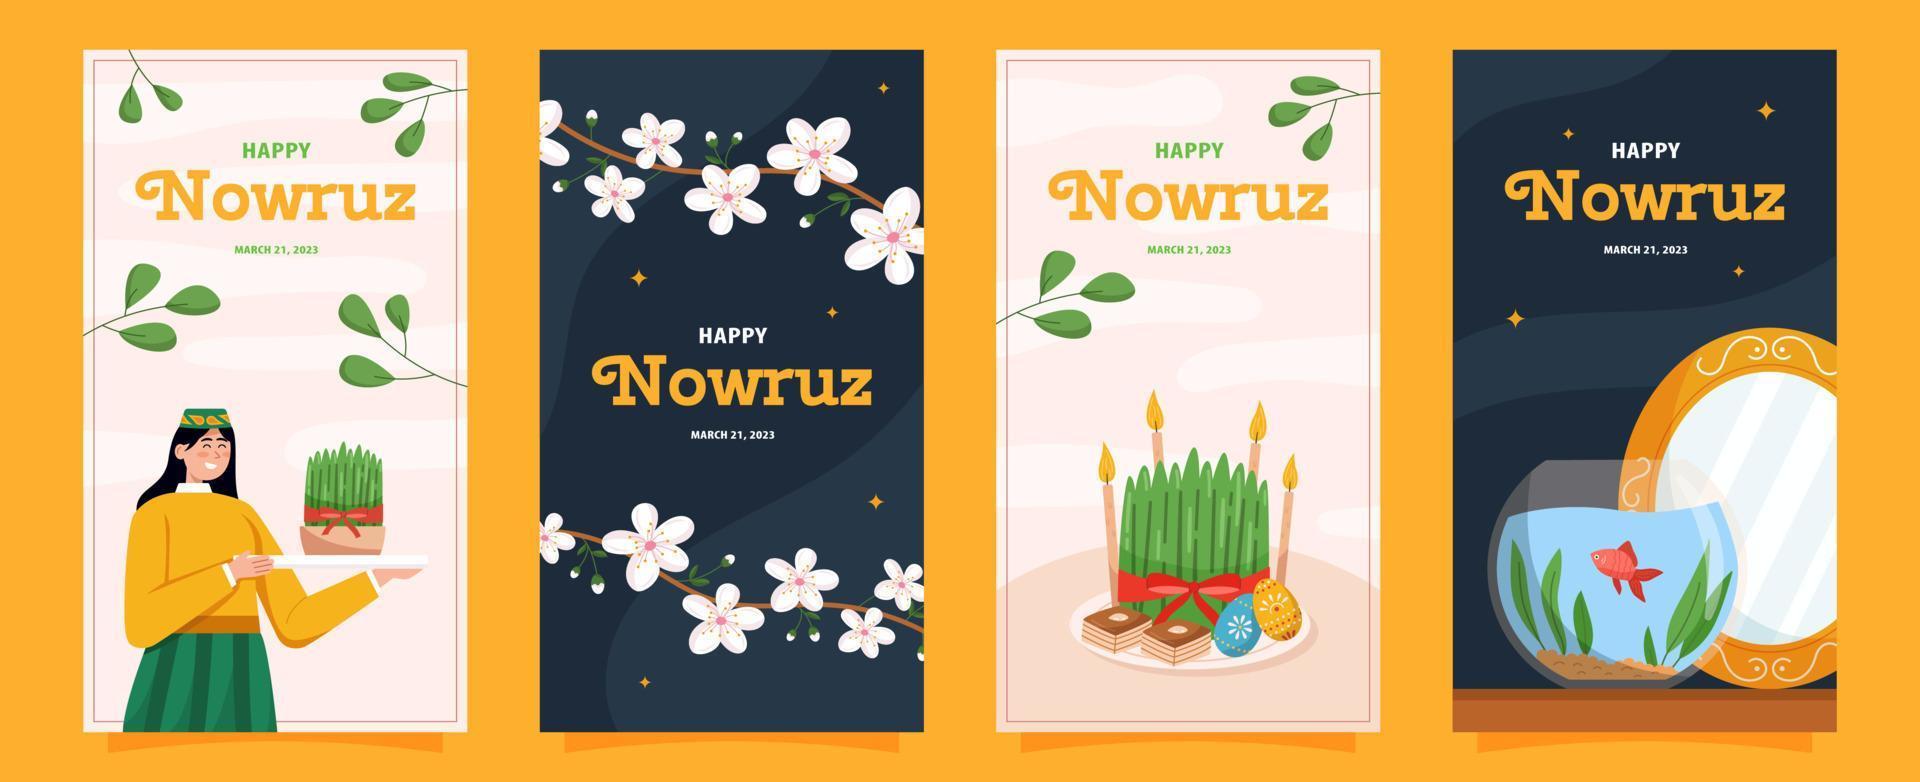 Happy Nowruz stories set vector